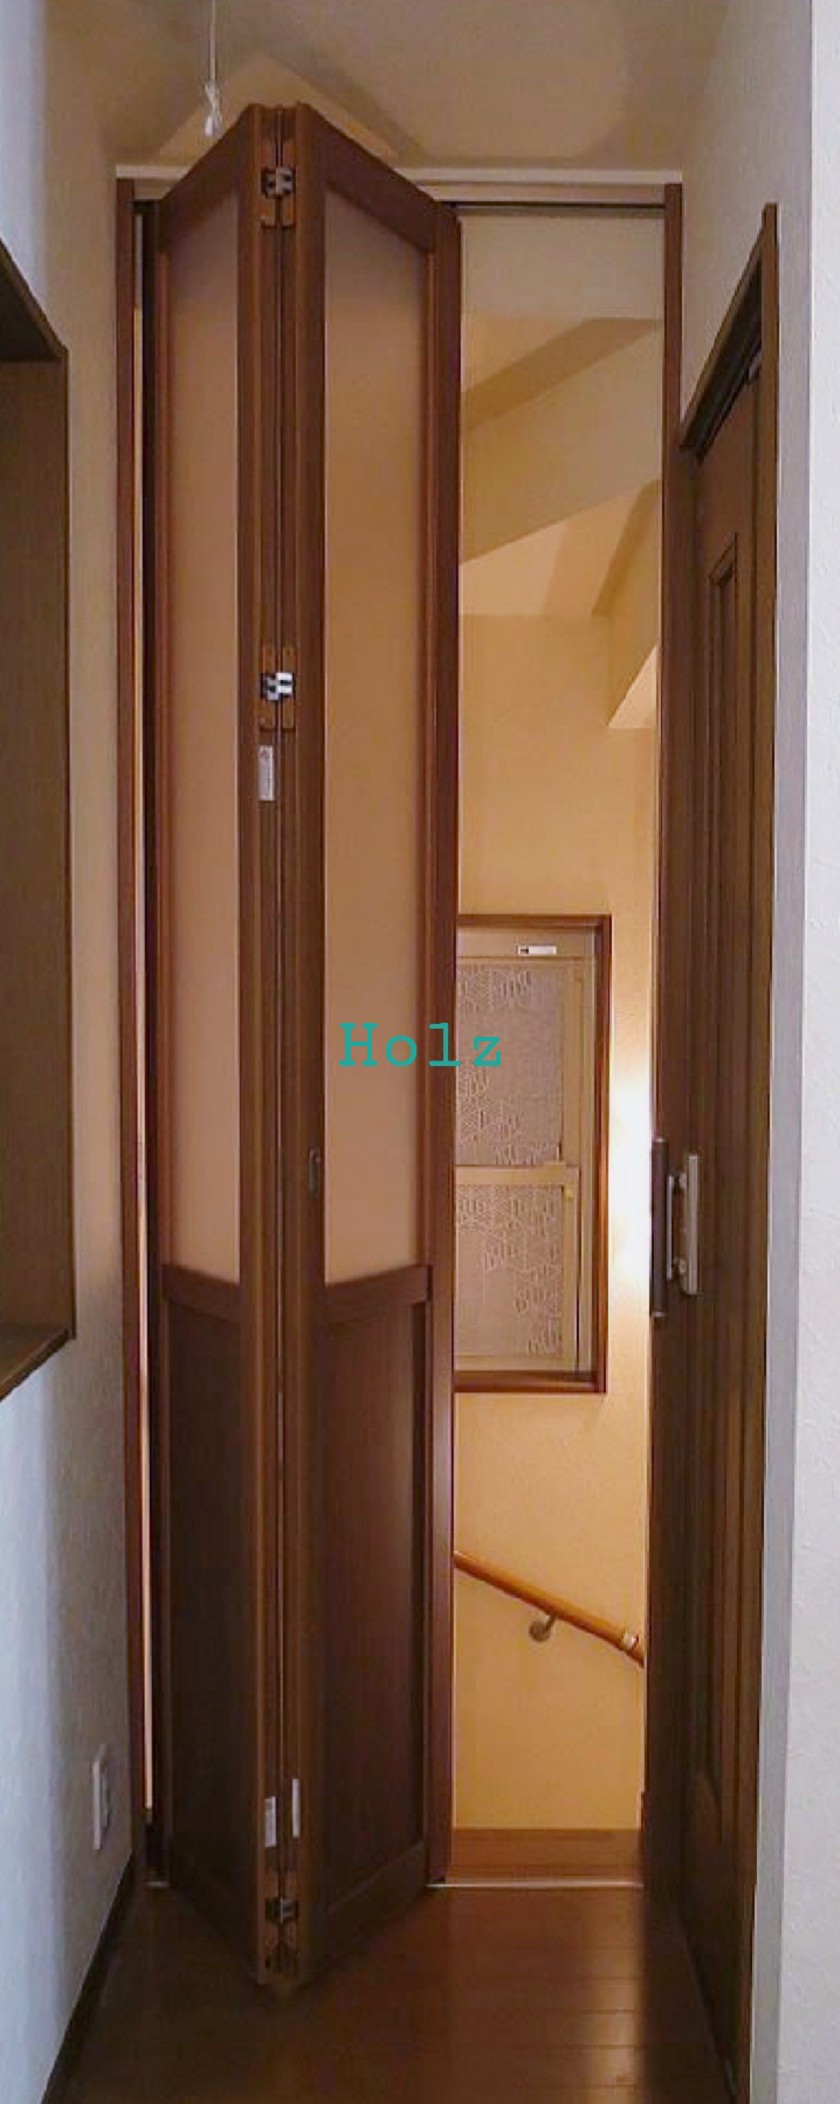 Двери гармошка в узкий дверной проем Алма-Ата (Алматы)